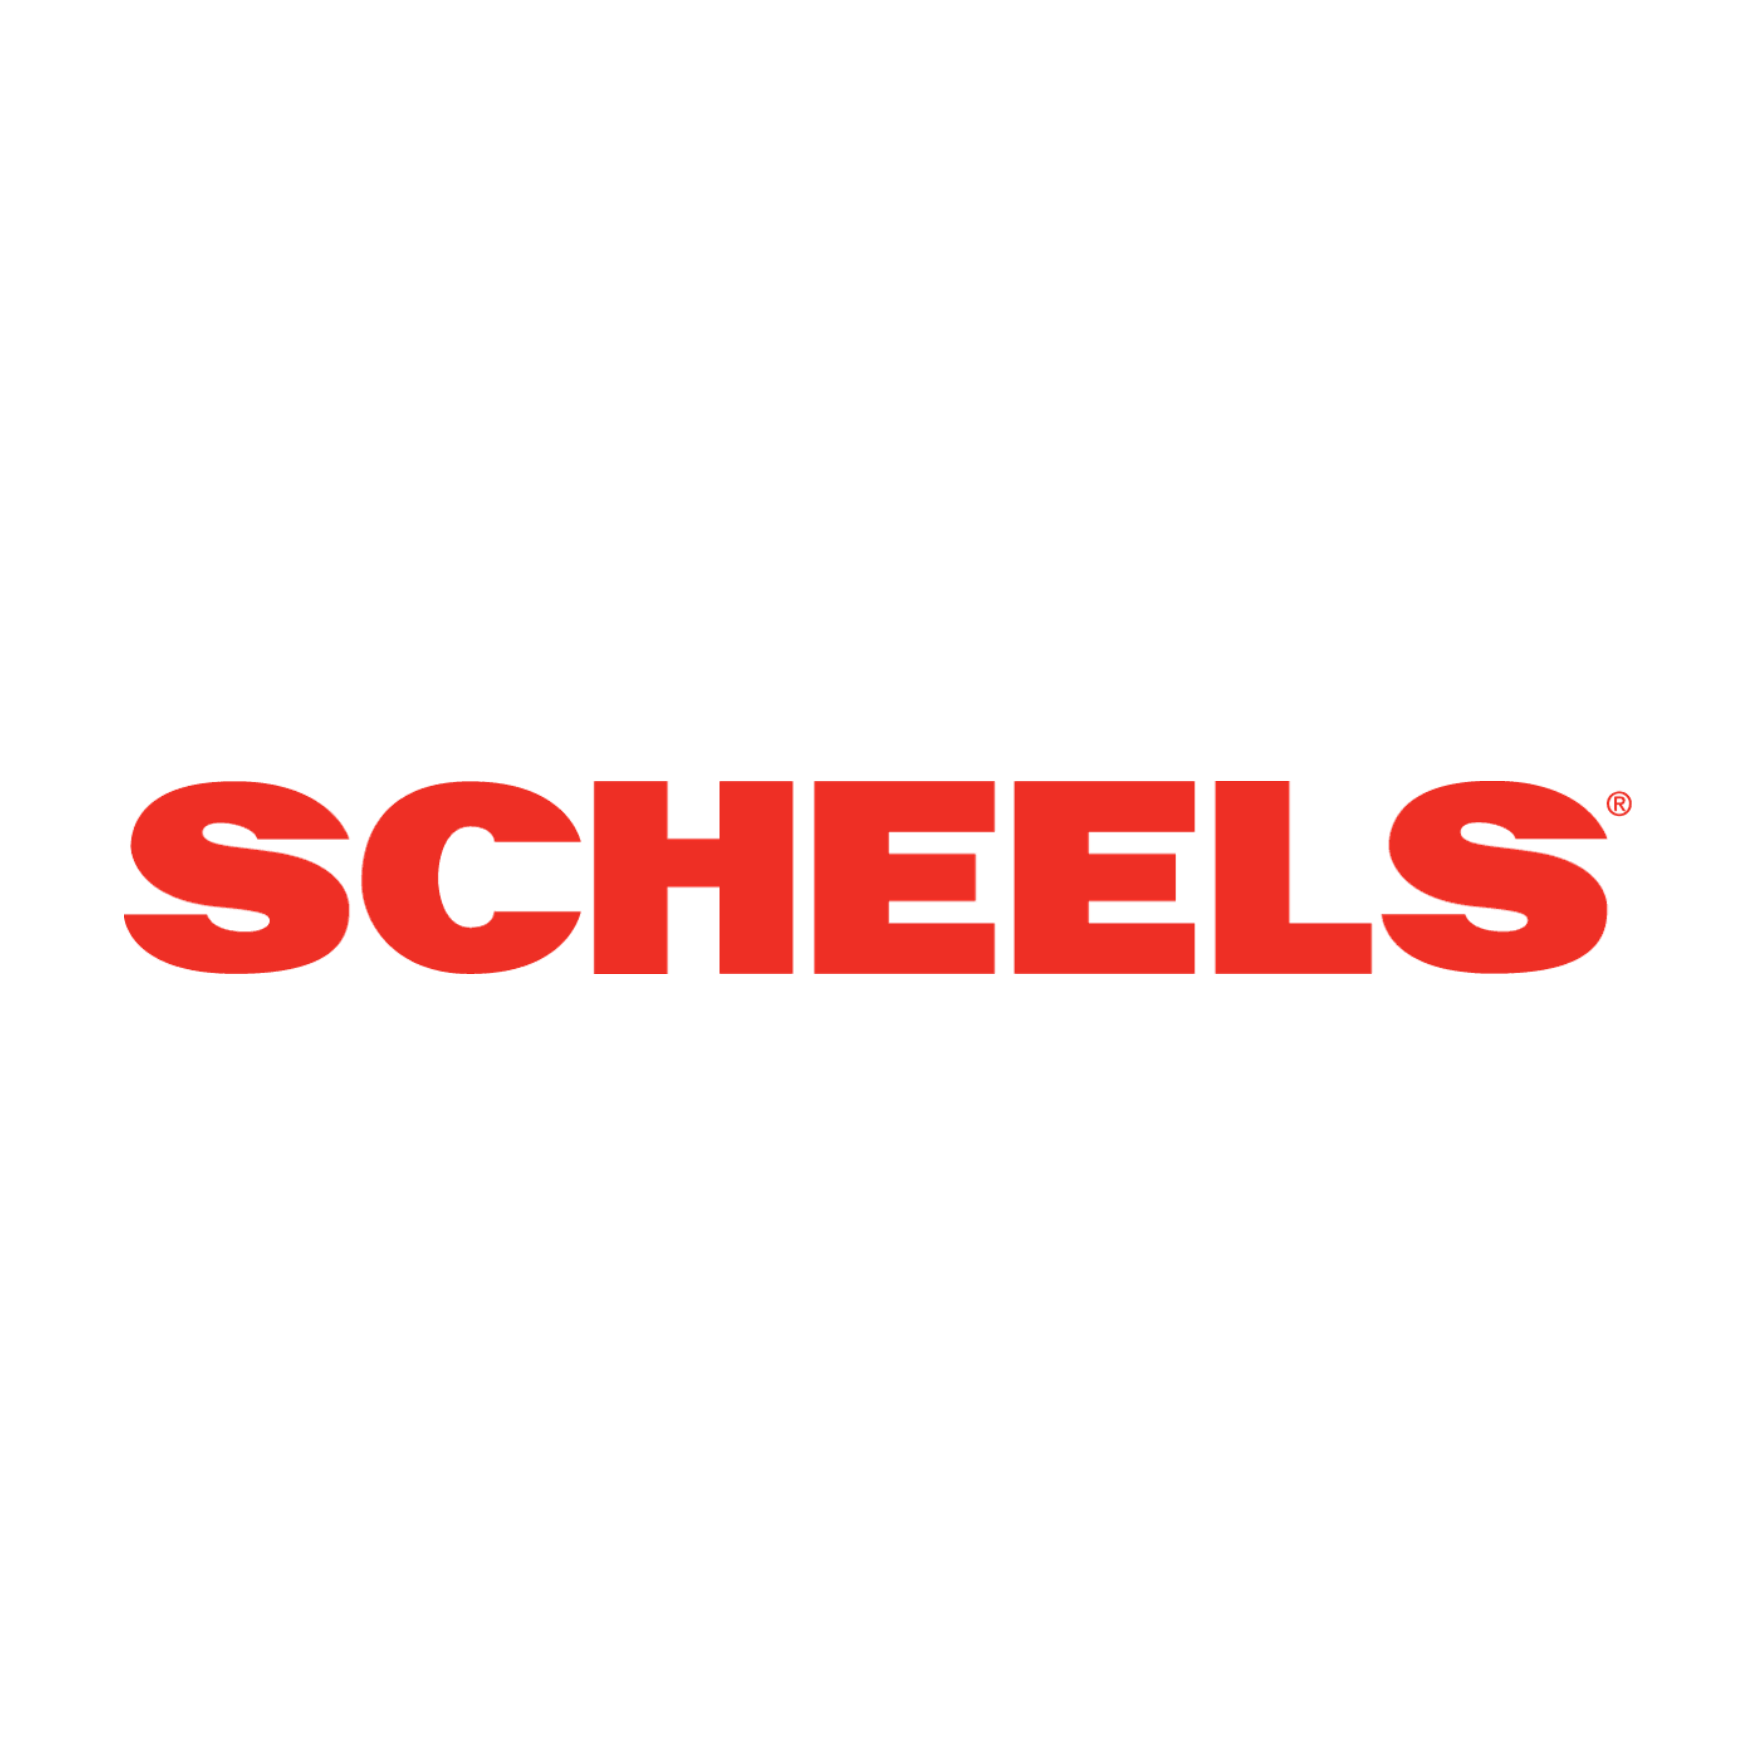 Scheels v2.png